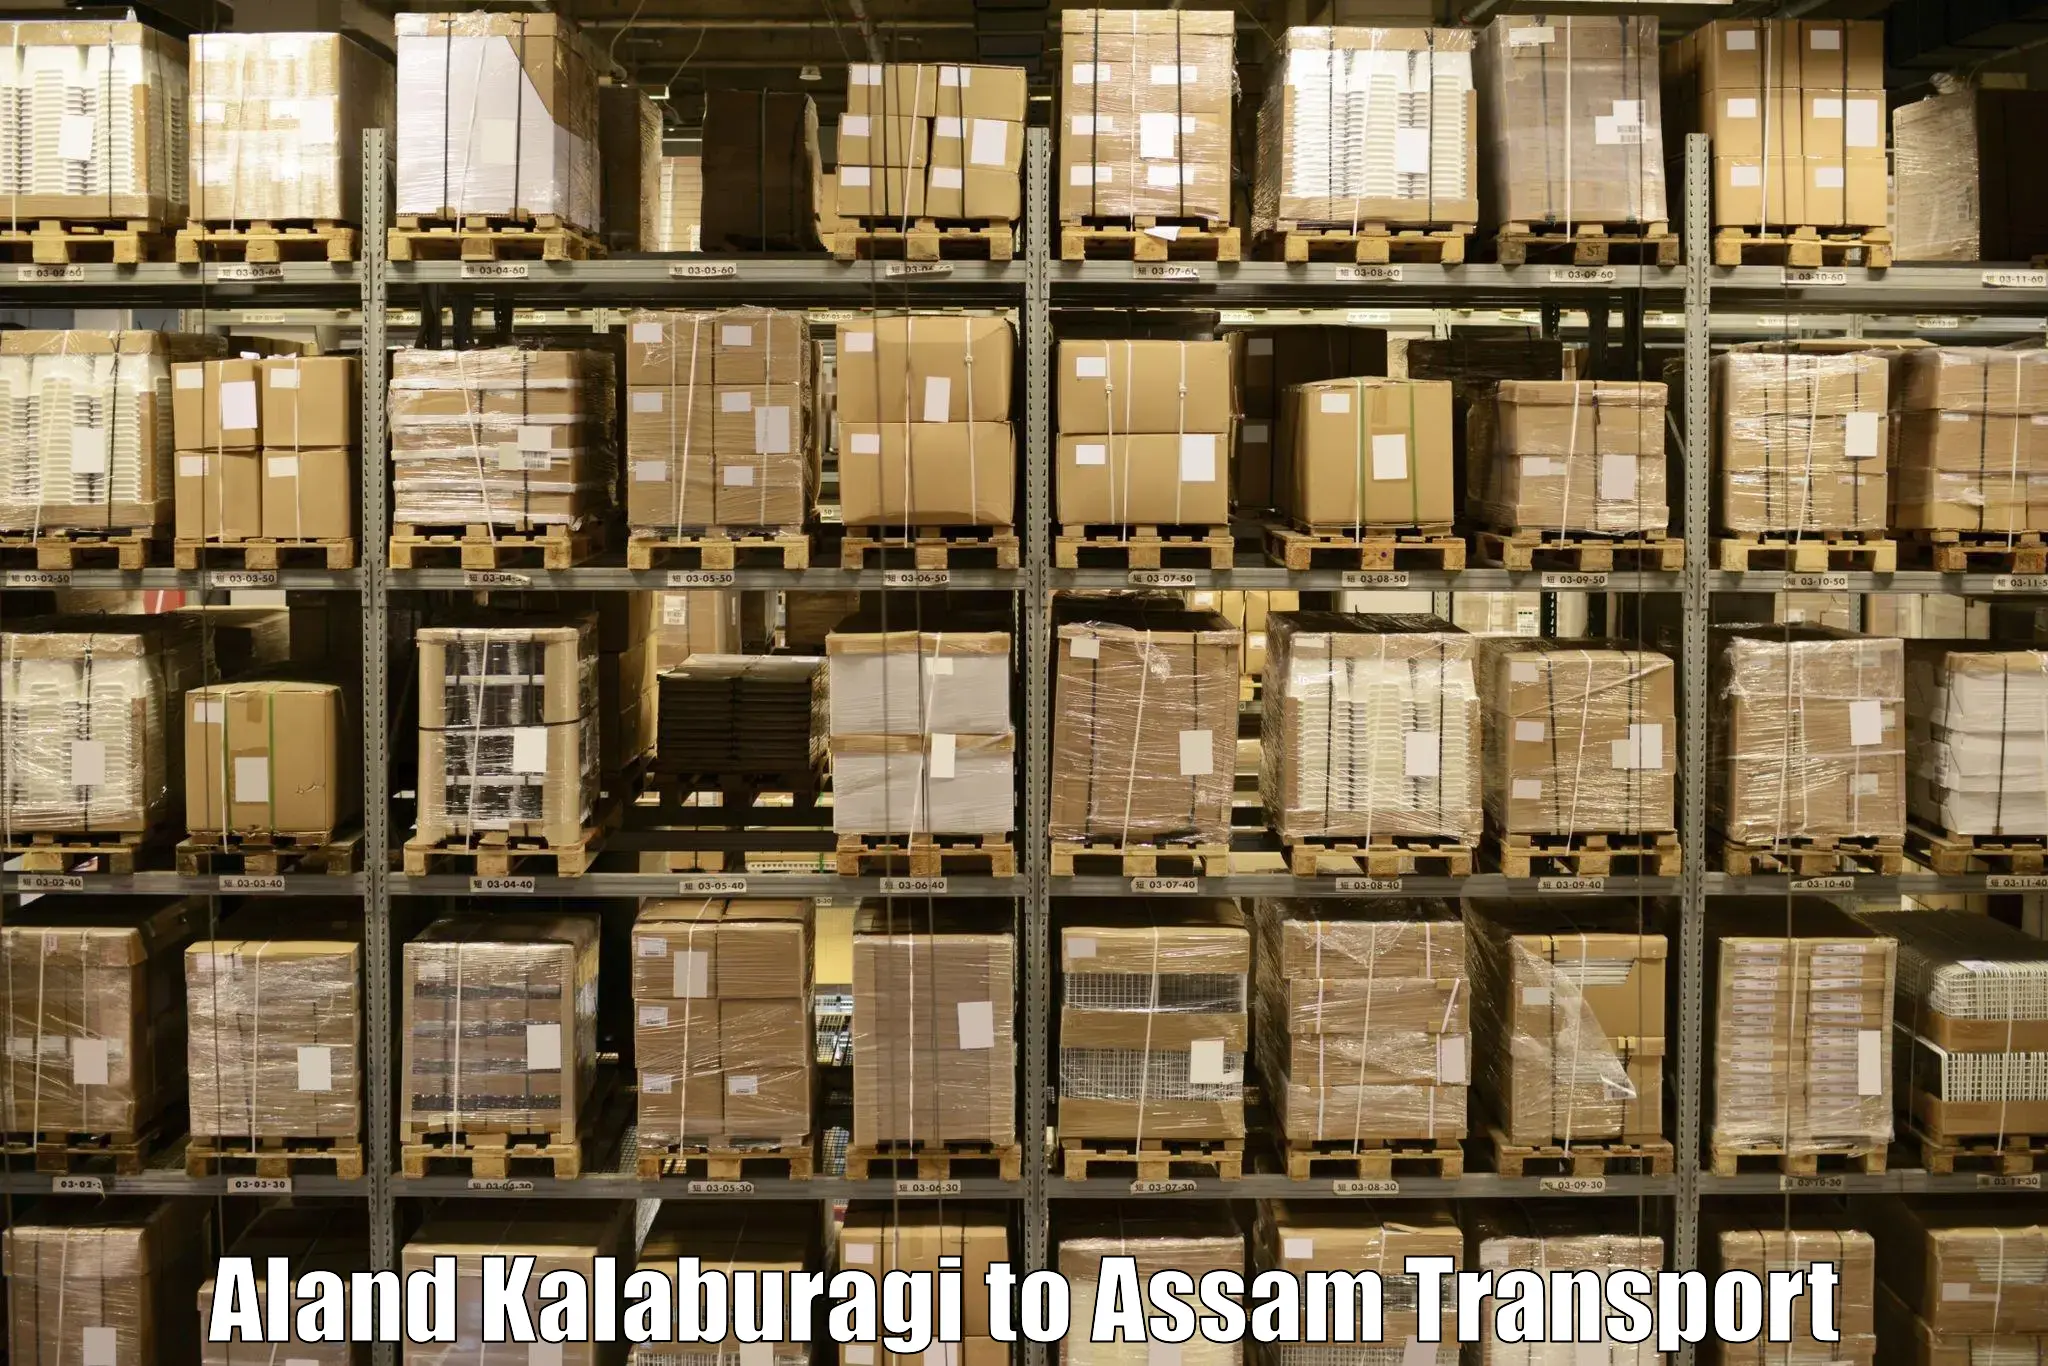 Daily transport service Aland Kalaburagi to Karbi Anglong